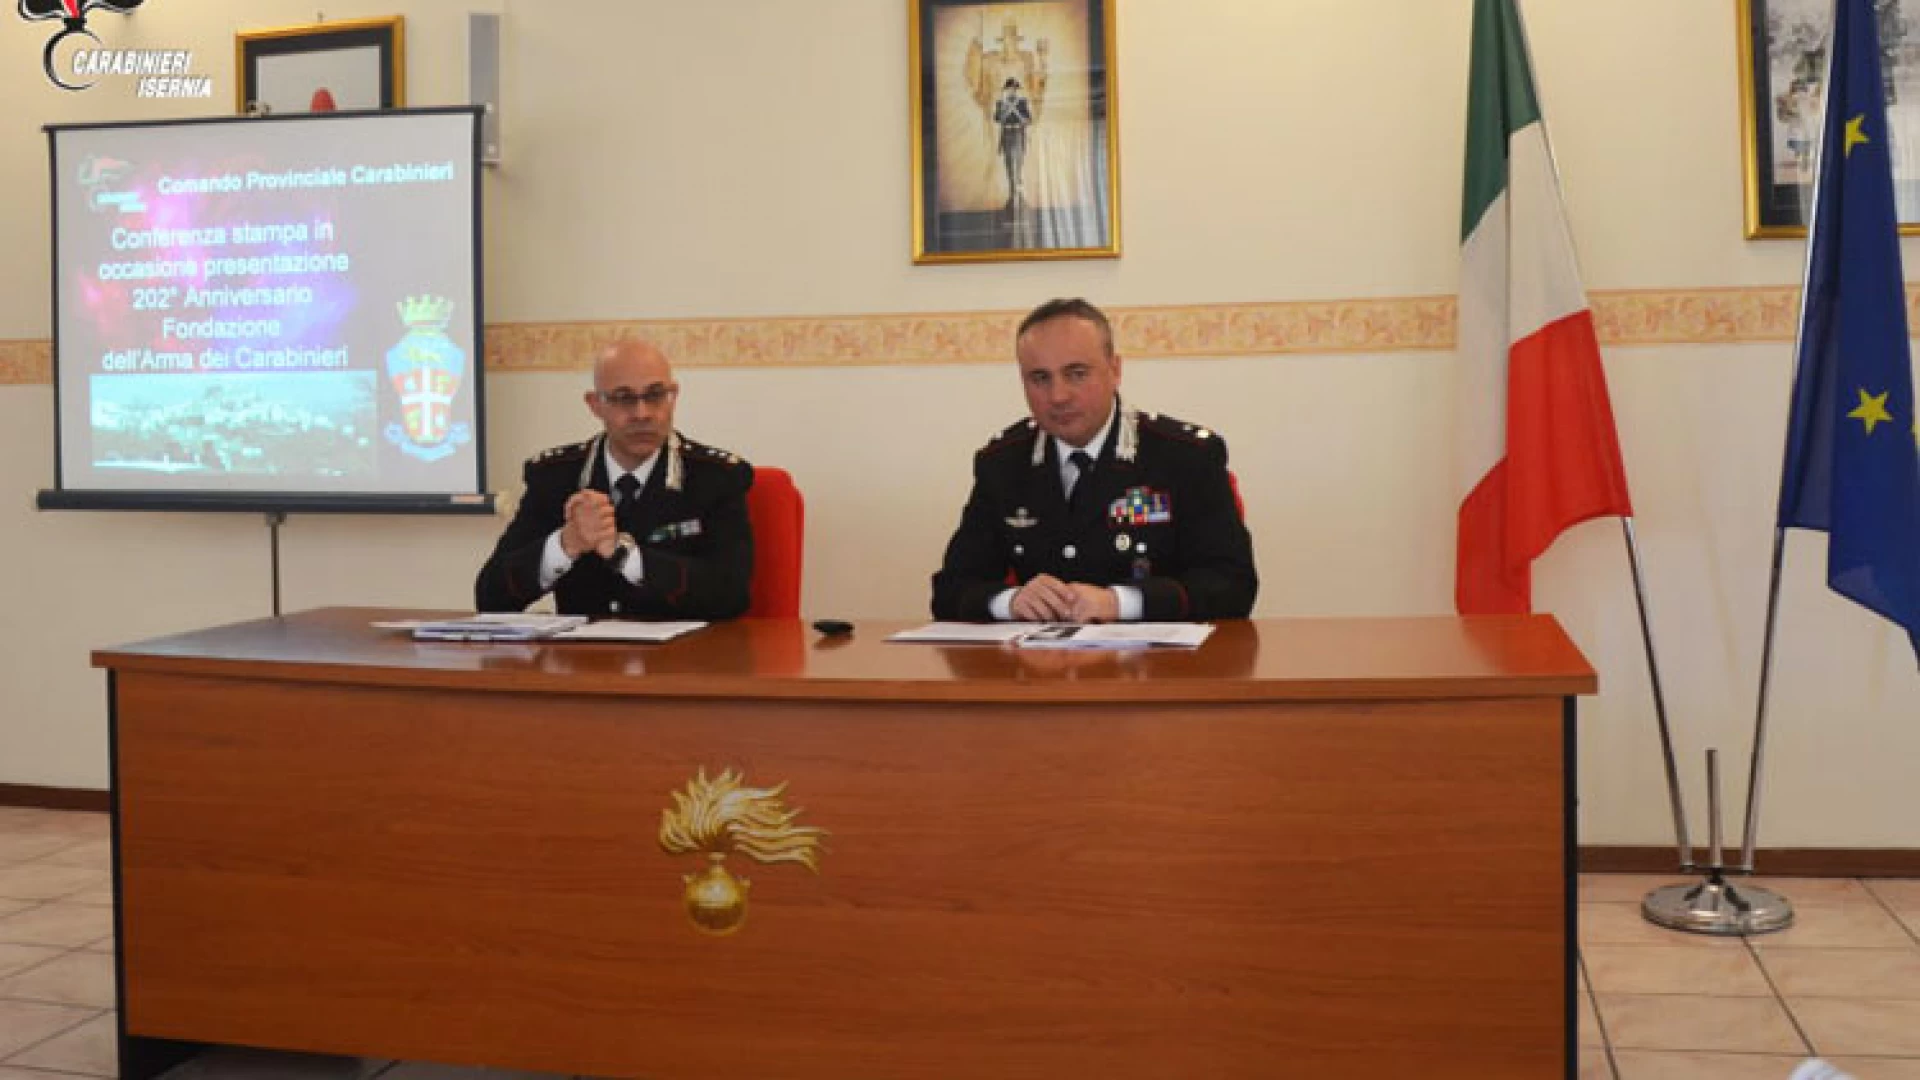 Isernia una delle Province più sicure d’Italia anche grazie all’azione dei Carabinieri. L’Arma in prima linea sul territorio.